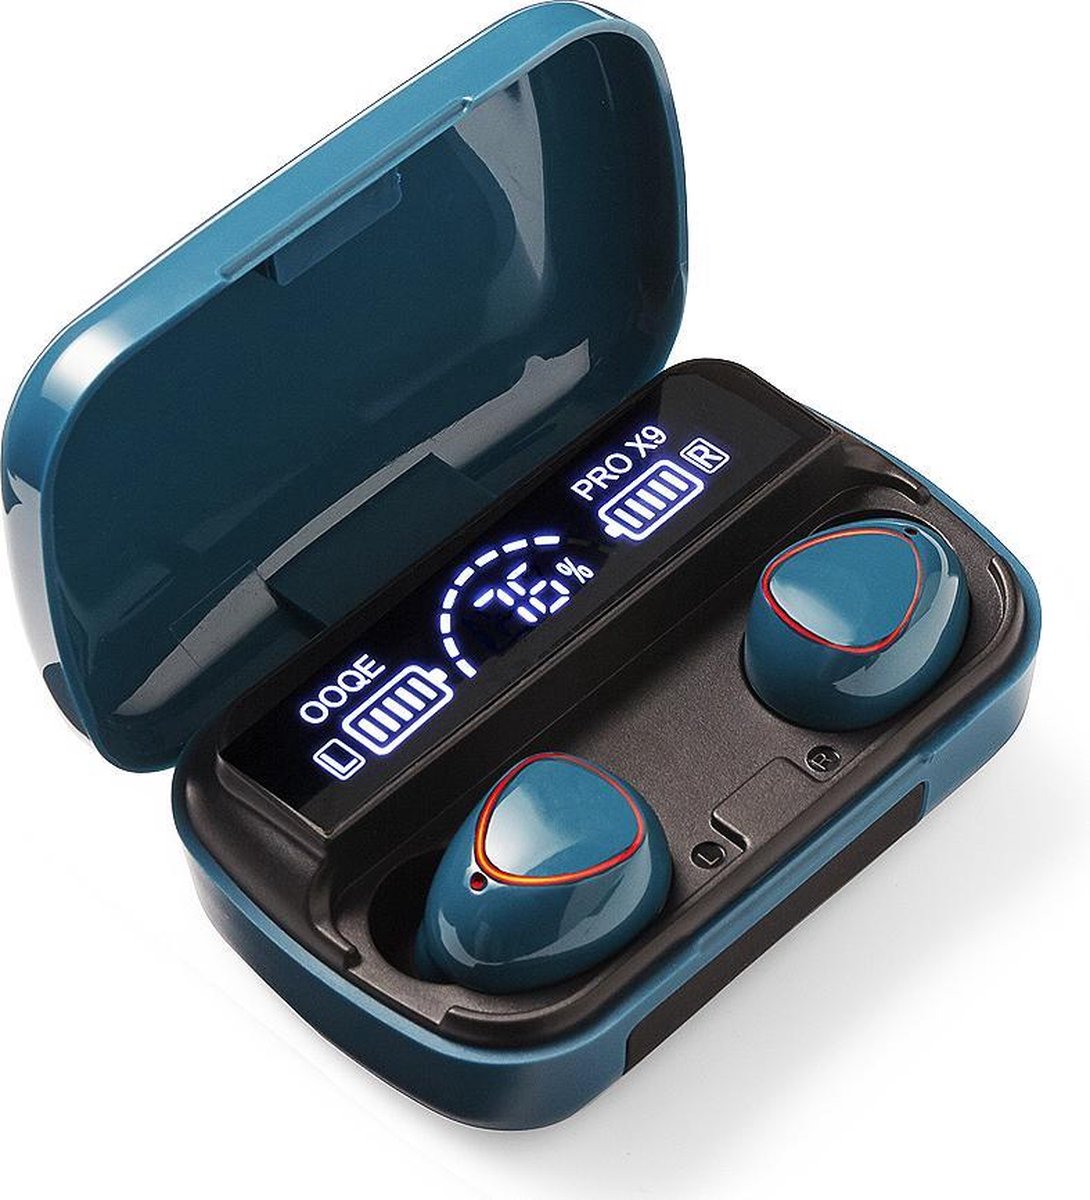 OOQE PRO X9 - Draadloze Oordopjes - Oordopjes Draadloos - Oortjes Draadloos - Water- en Stof Bestendig - Ingebouwde Microfoon - Ingebouwde Powerbank - 80 uur Batterijduur - Geschikt voor TV, Tablet en Laptop - Bluetooth 5.1 - Turquoise